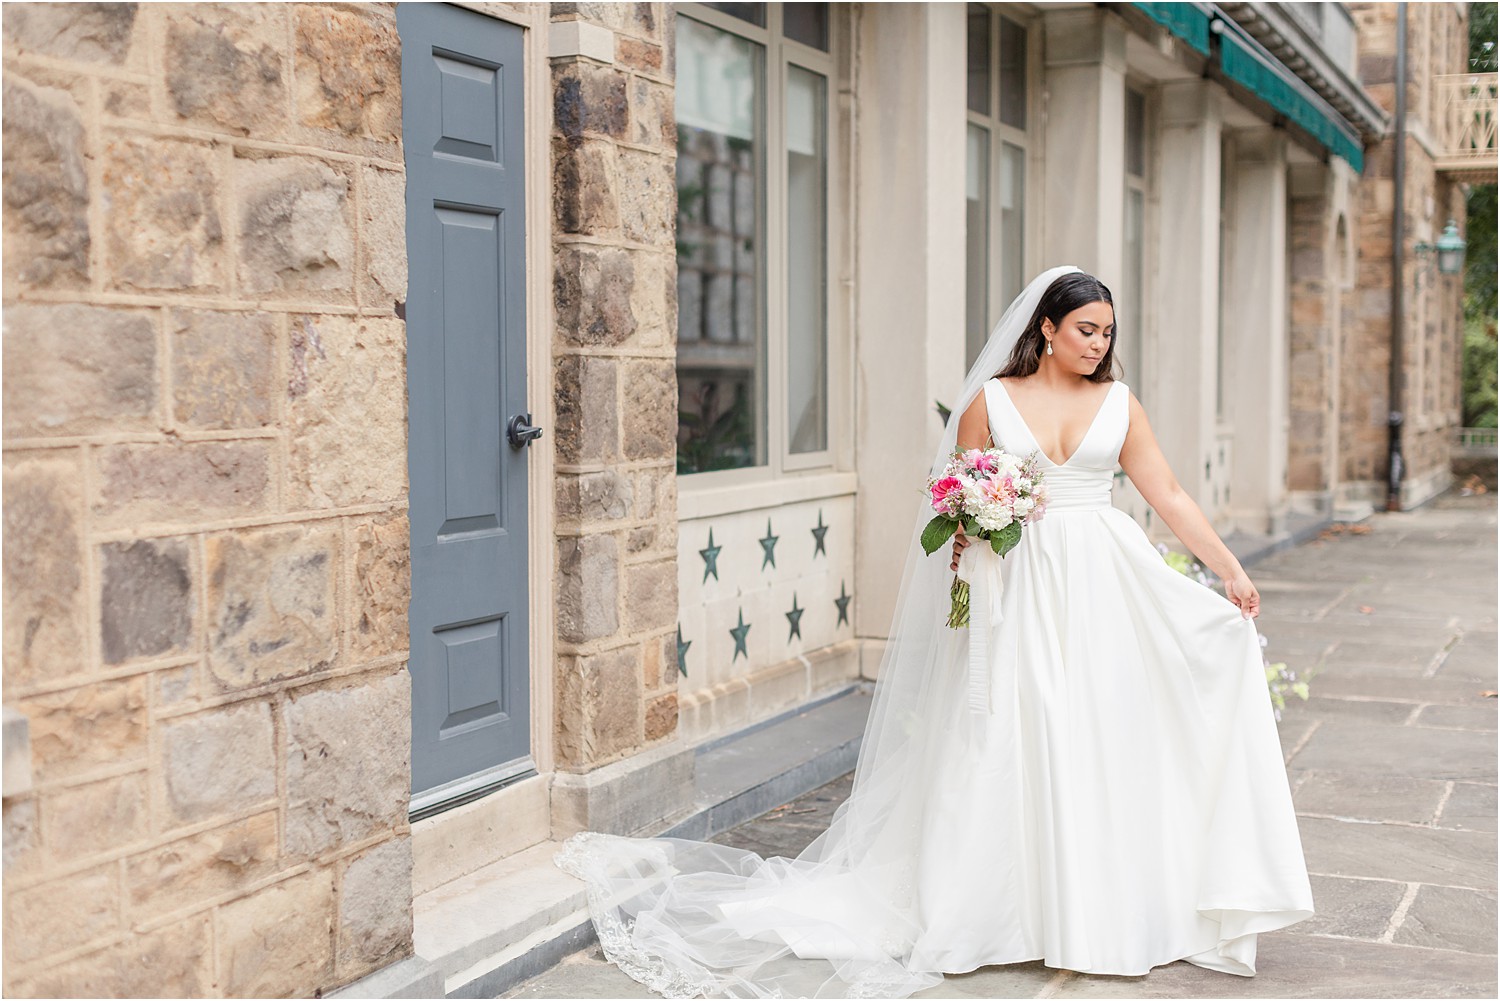 Bride details-wedding gown